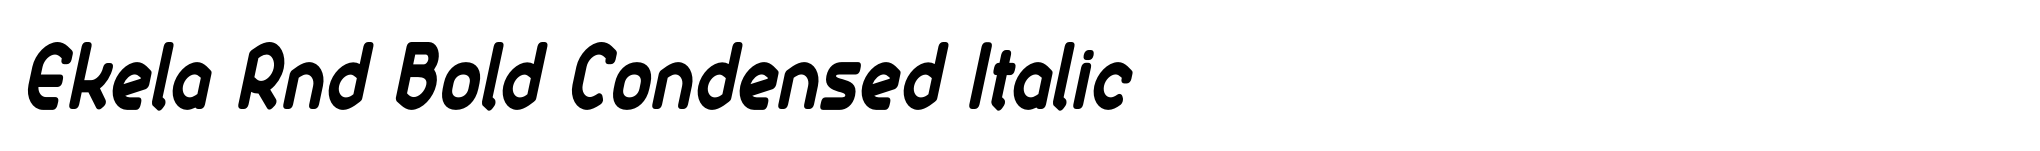 Ekela Rnd Bold Condensed Italic image